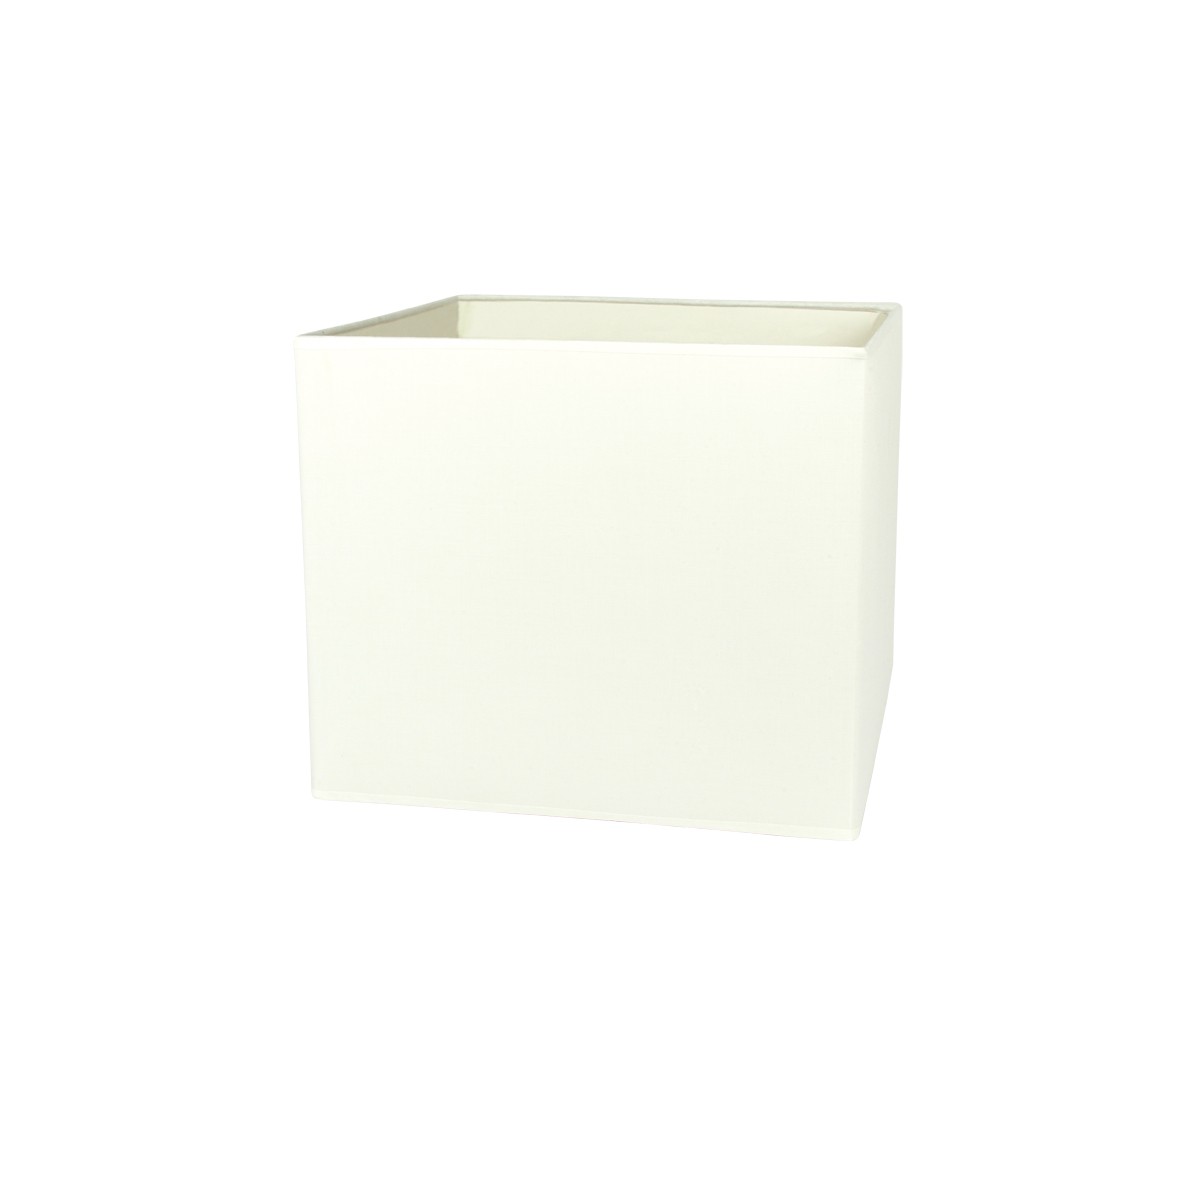 Καπέλο μονόχρωμο τετράγωνο 1 cotton 35cm κάτω πλευρά λευκό  VK/E27/E14/S35/W